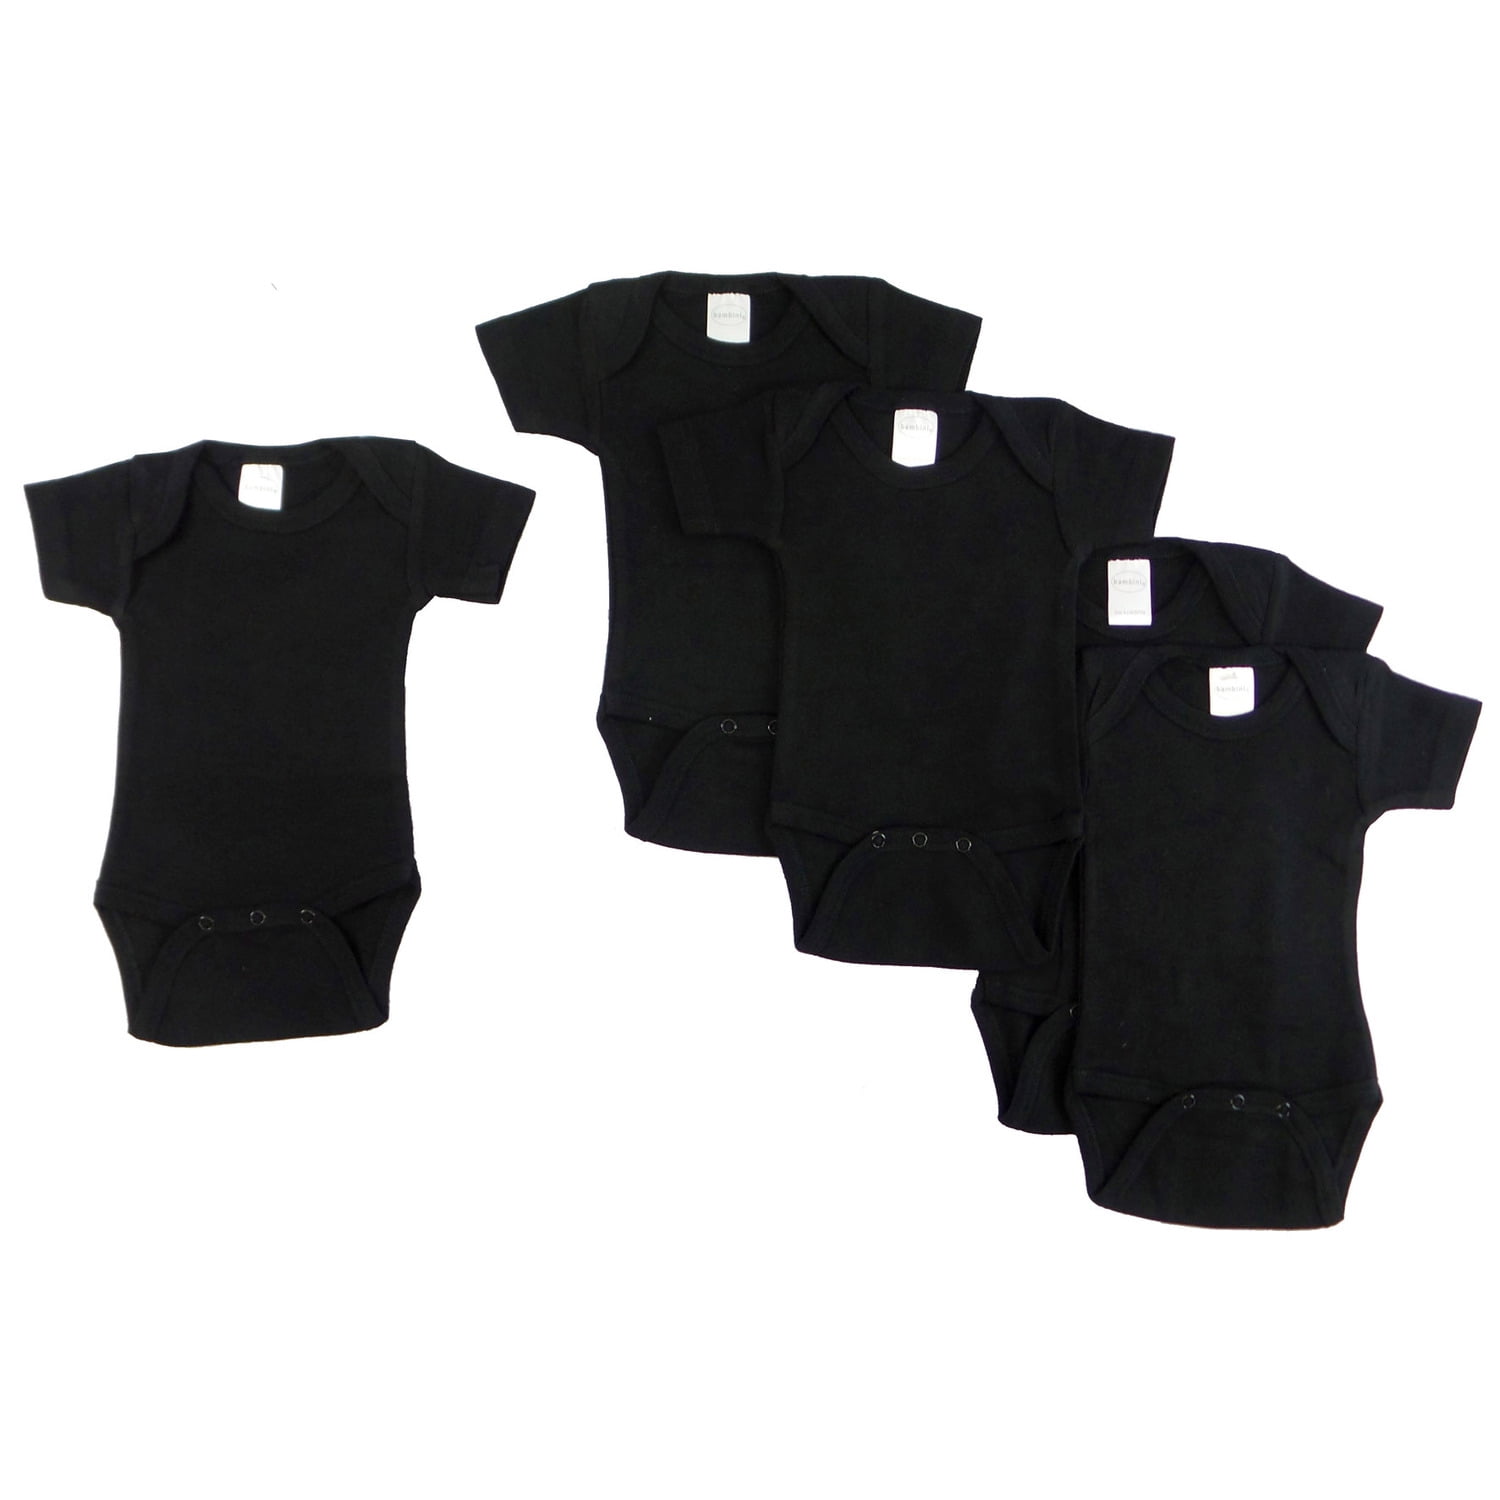 0010bl5-m Short Sleeve - Black, Medium - Pack Of 5